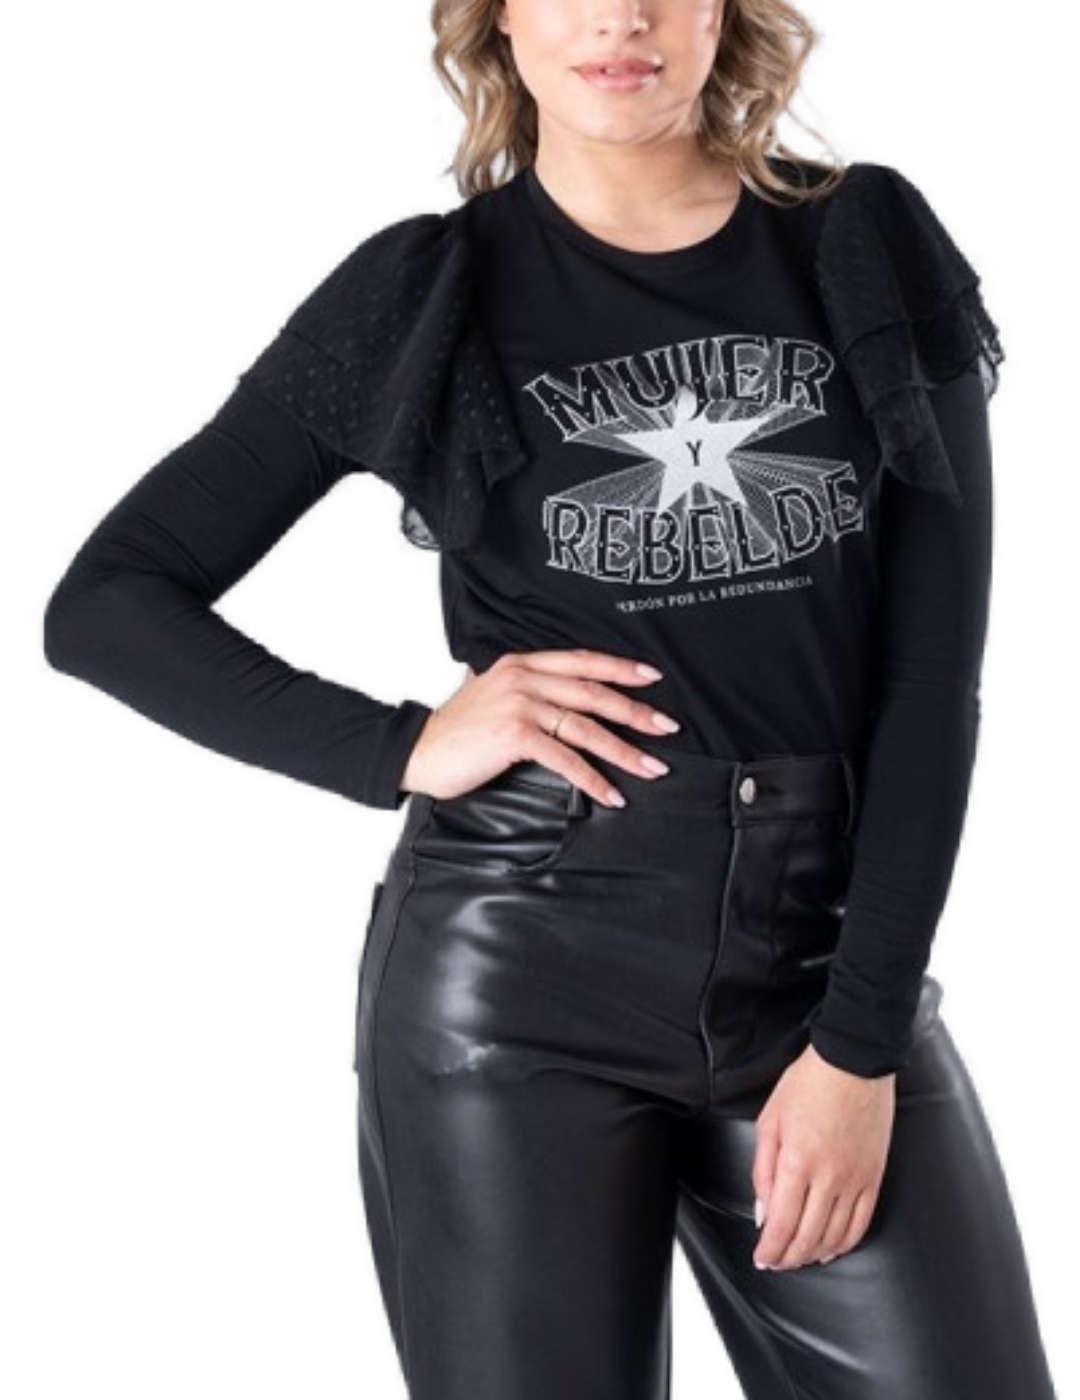 Camiseta Animosa Mujer Rebelde negro manga larga para mujer